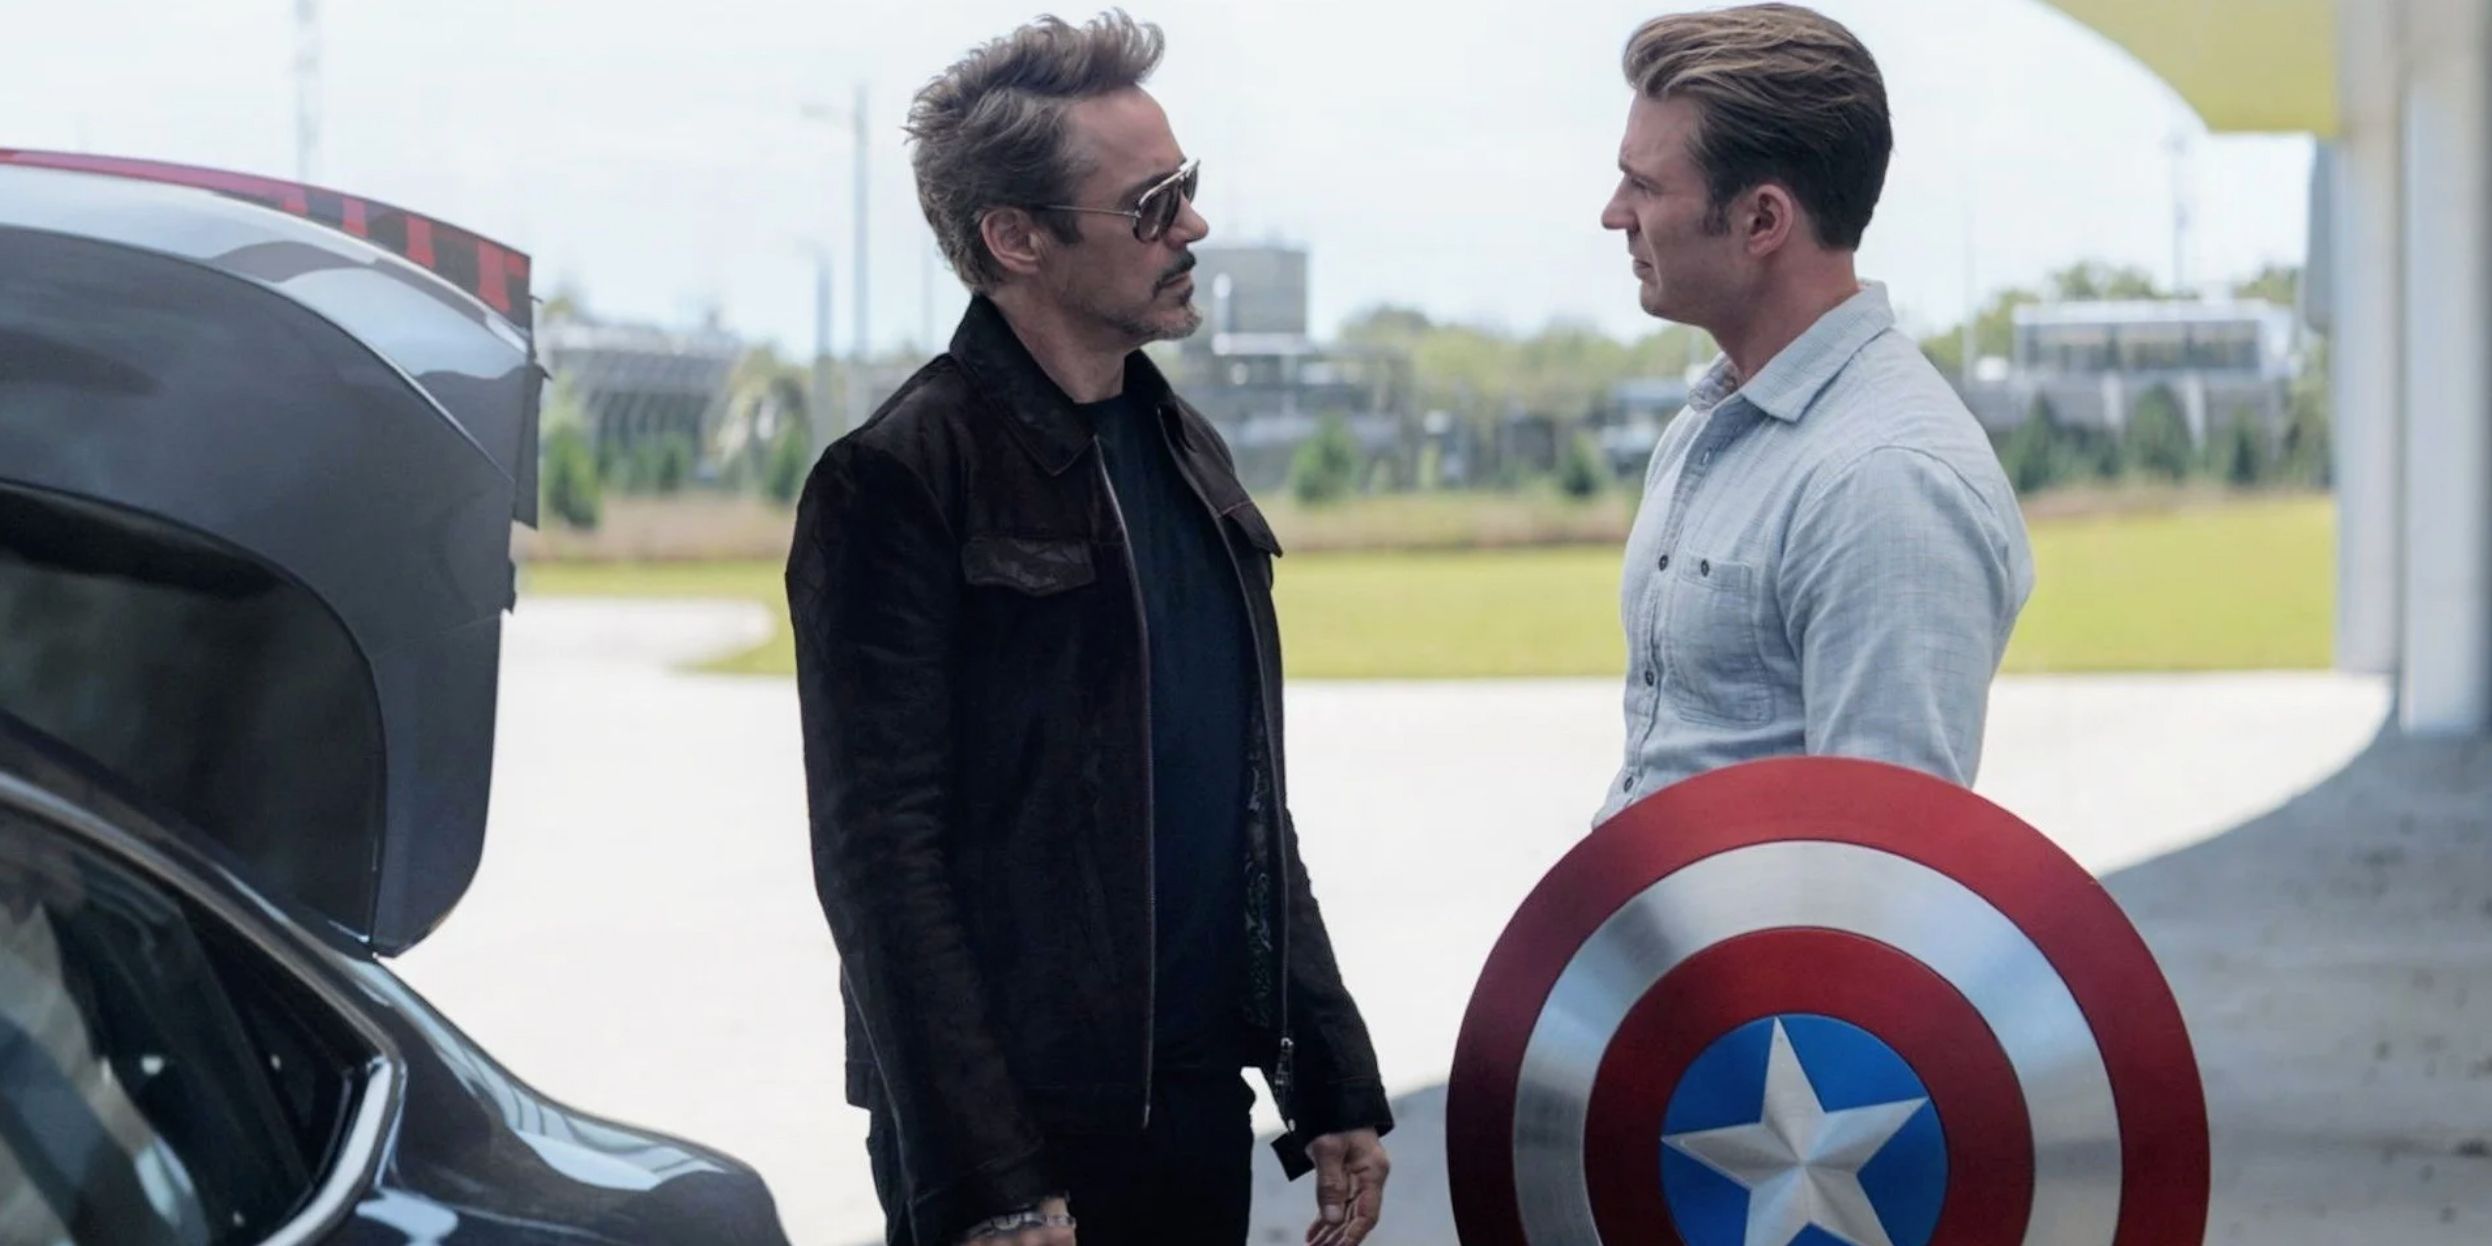 Tony Stark gives Captain America the shield in Avengers Endgame